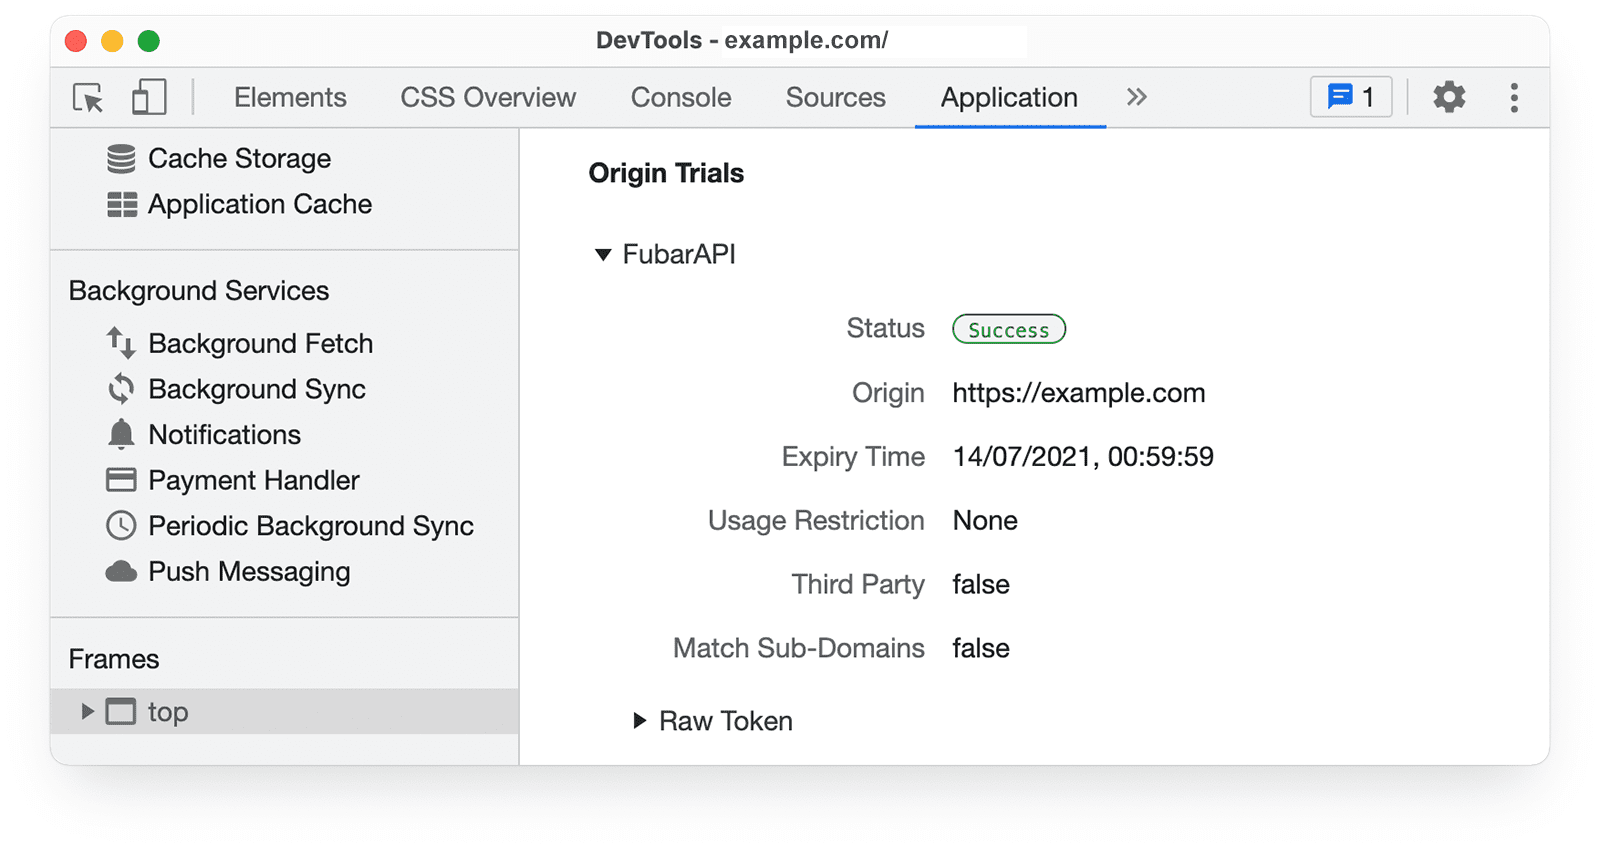 Chrome DevTools 
के ऑरिजिन ट्रायल की जानकारी, ऐप्लिकेशन पैनल में उपलब्ध है.